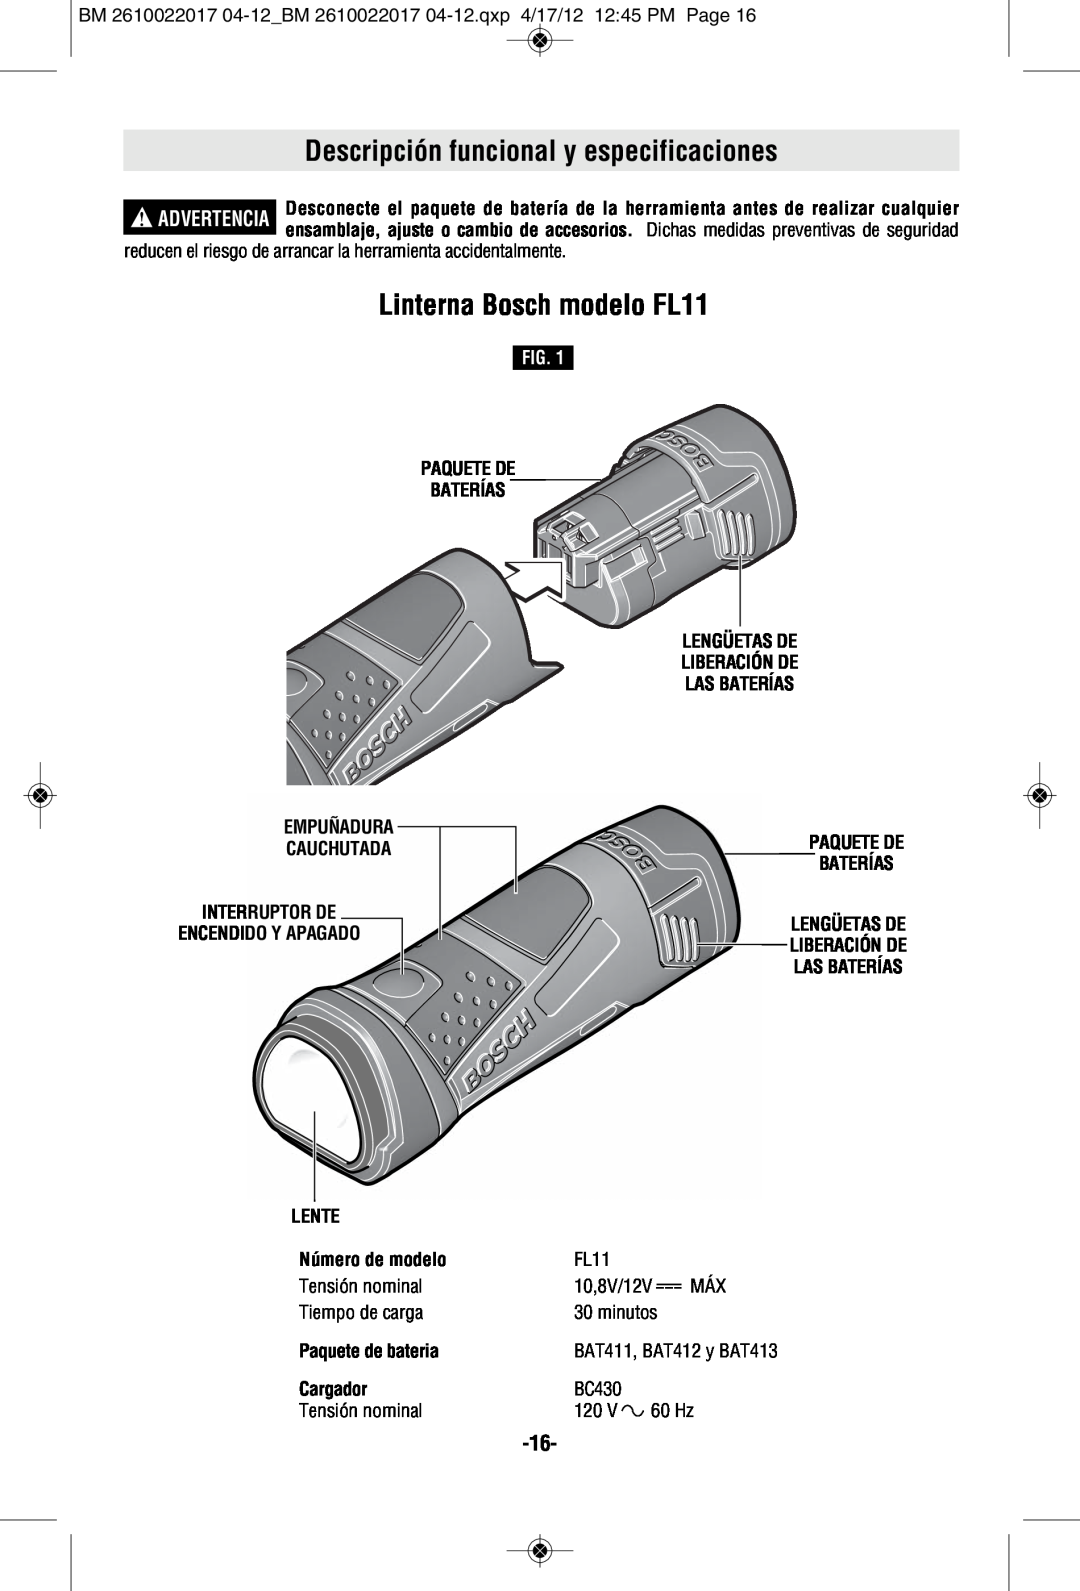 Bosch Power Tools FL11A manual Descripción funcional y especificaciones, Linterna Bosch modelo FL11, Paquete De Baterías 